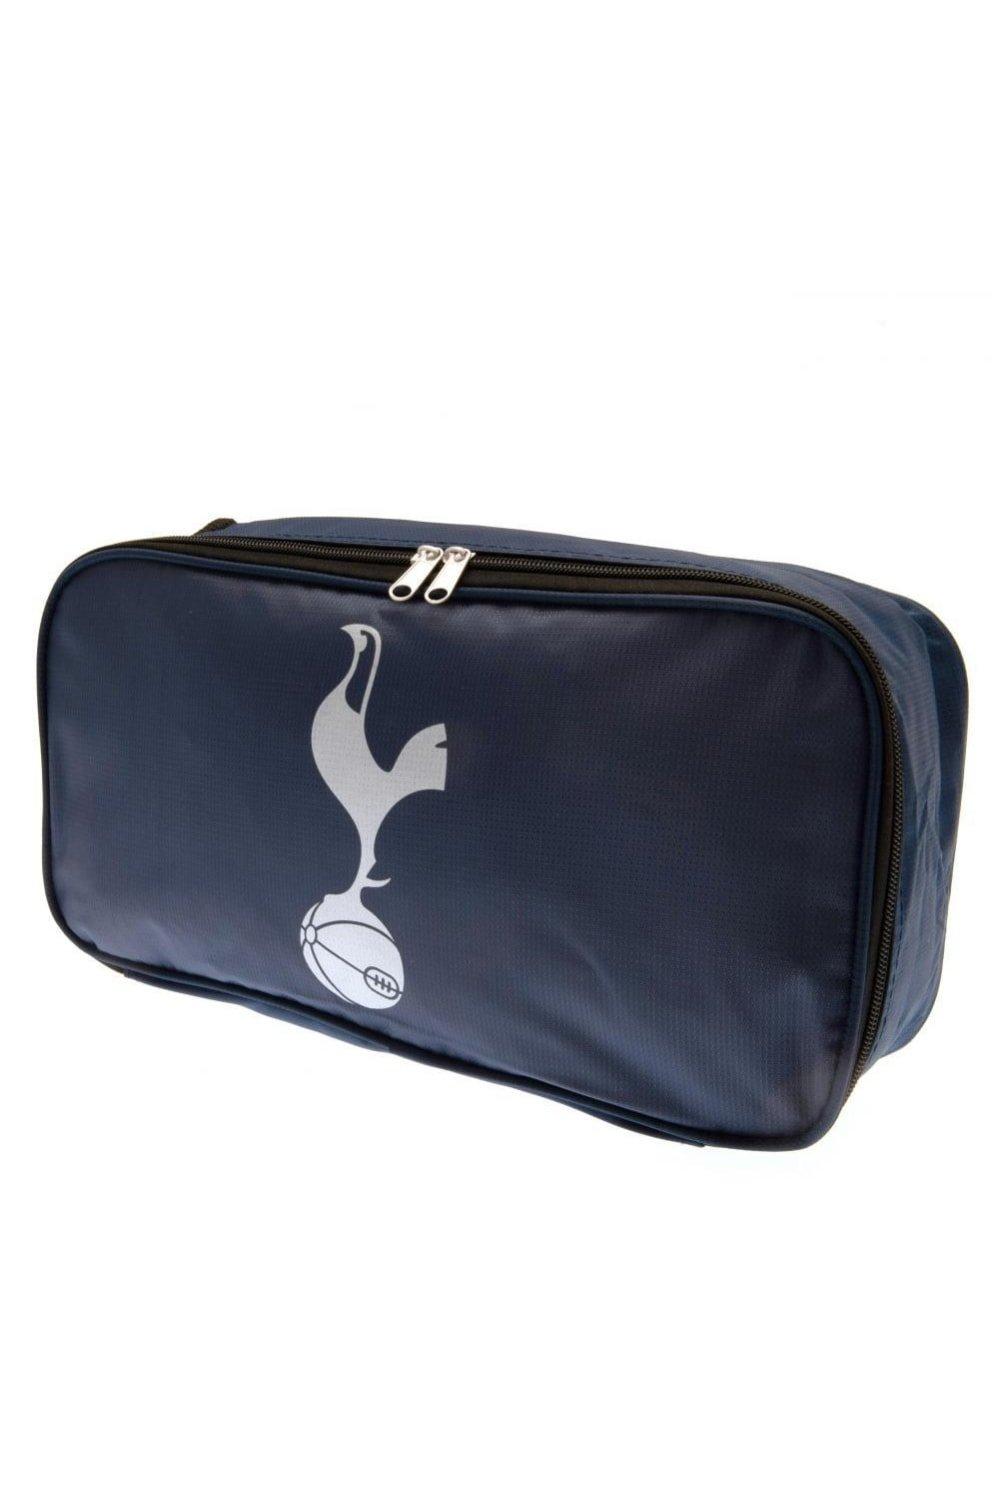 Нейлоновая сумка для обуви с логотипом Tottenham Hotspur FC, темно-синий вольтман л метка вдовы